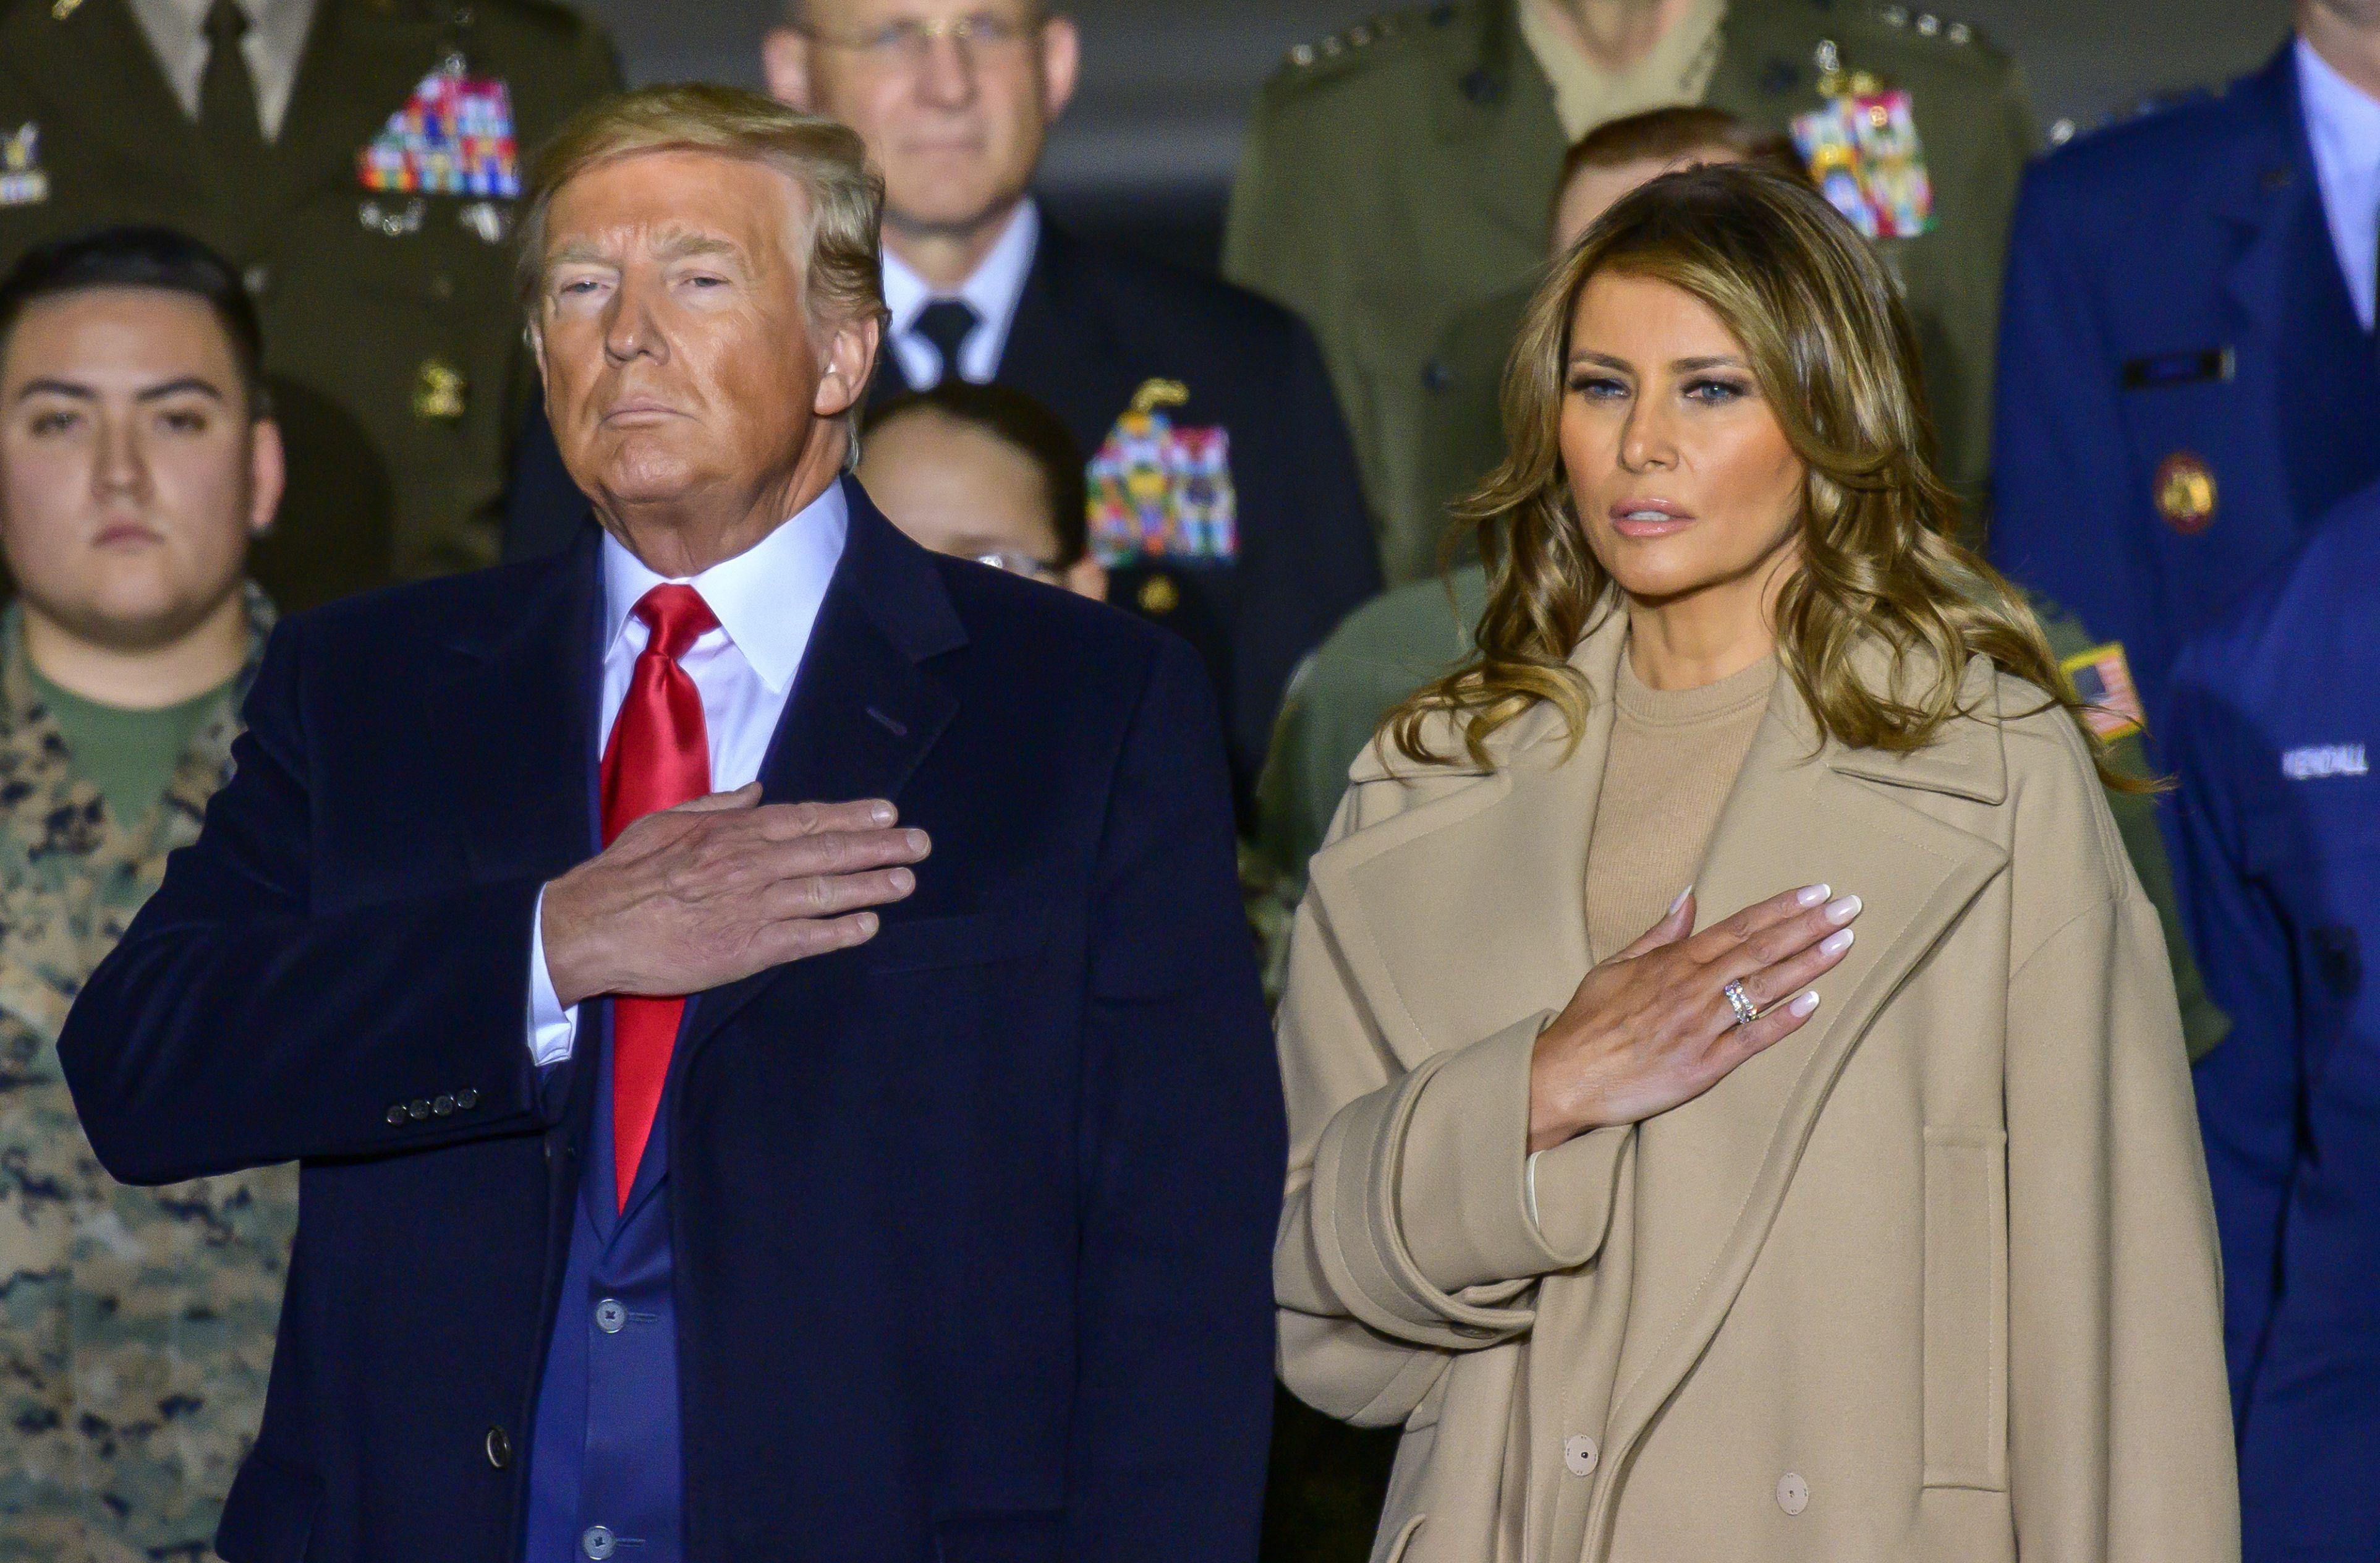 FOTO | În timp ce Trump este "pătat de sânge", soția lui, Melania Trump, este omagiată pentru lupta împotriva hărțuirii